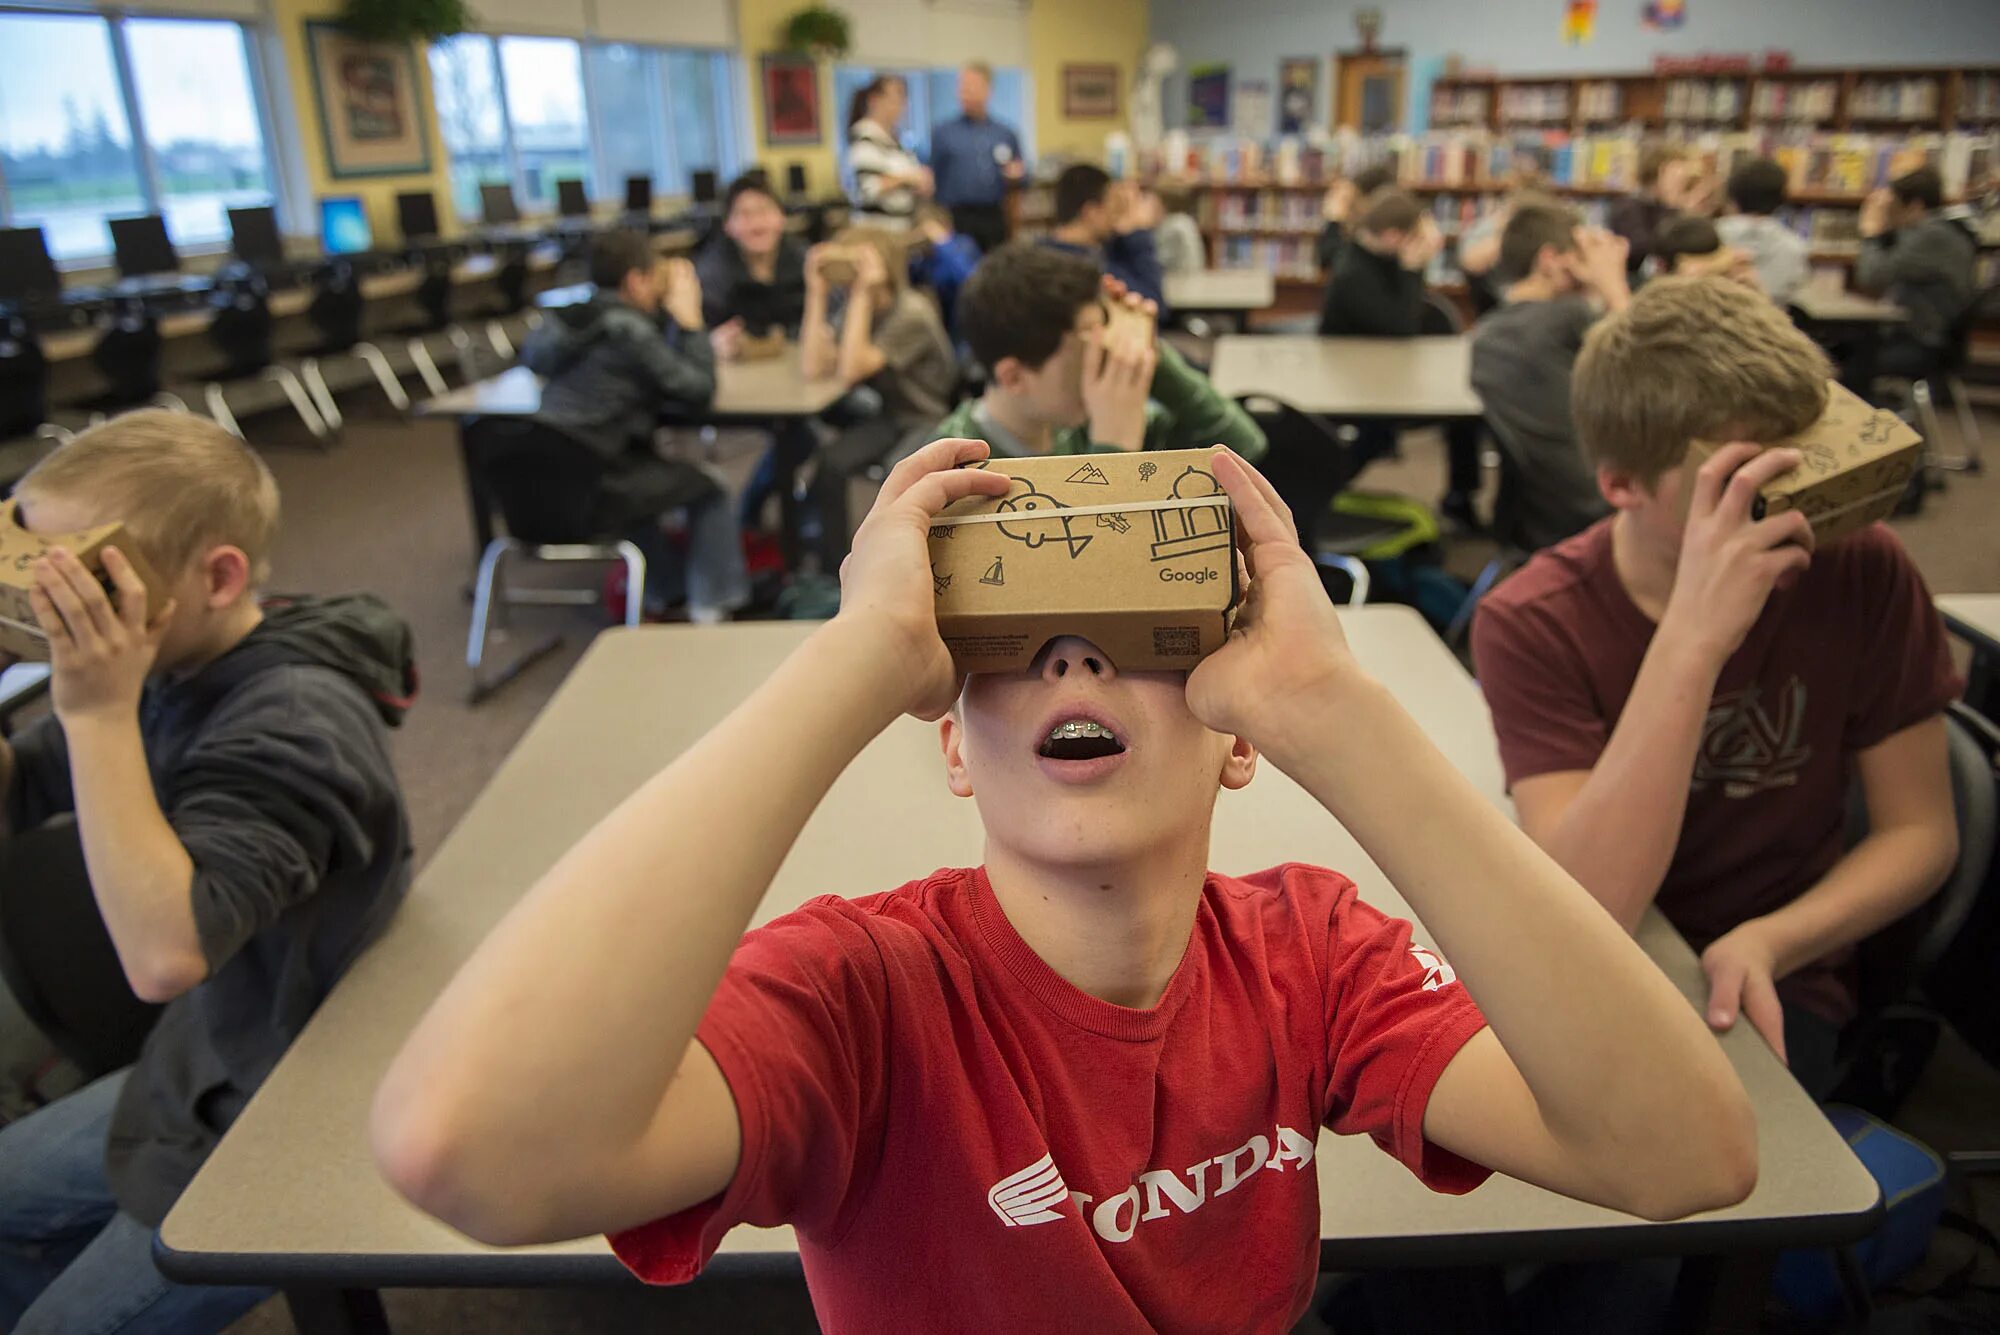 Vr класс. Виртуальная реальность в учебе. Шлем виртуальной реальности в школе. Очки виртуальной реальности в школе. Школьники в ВР.